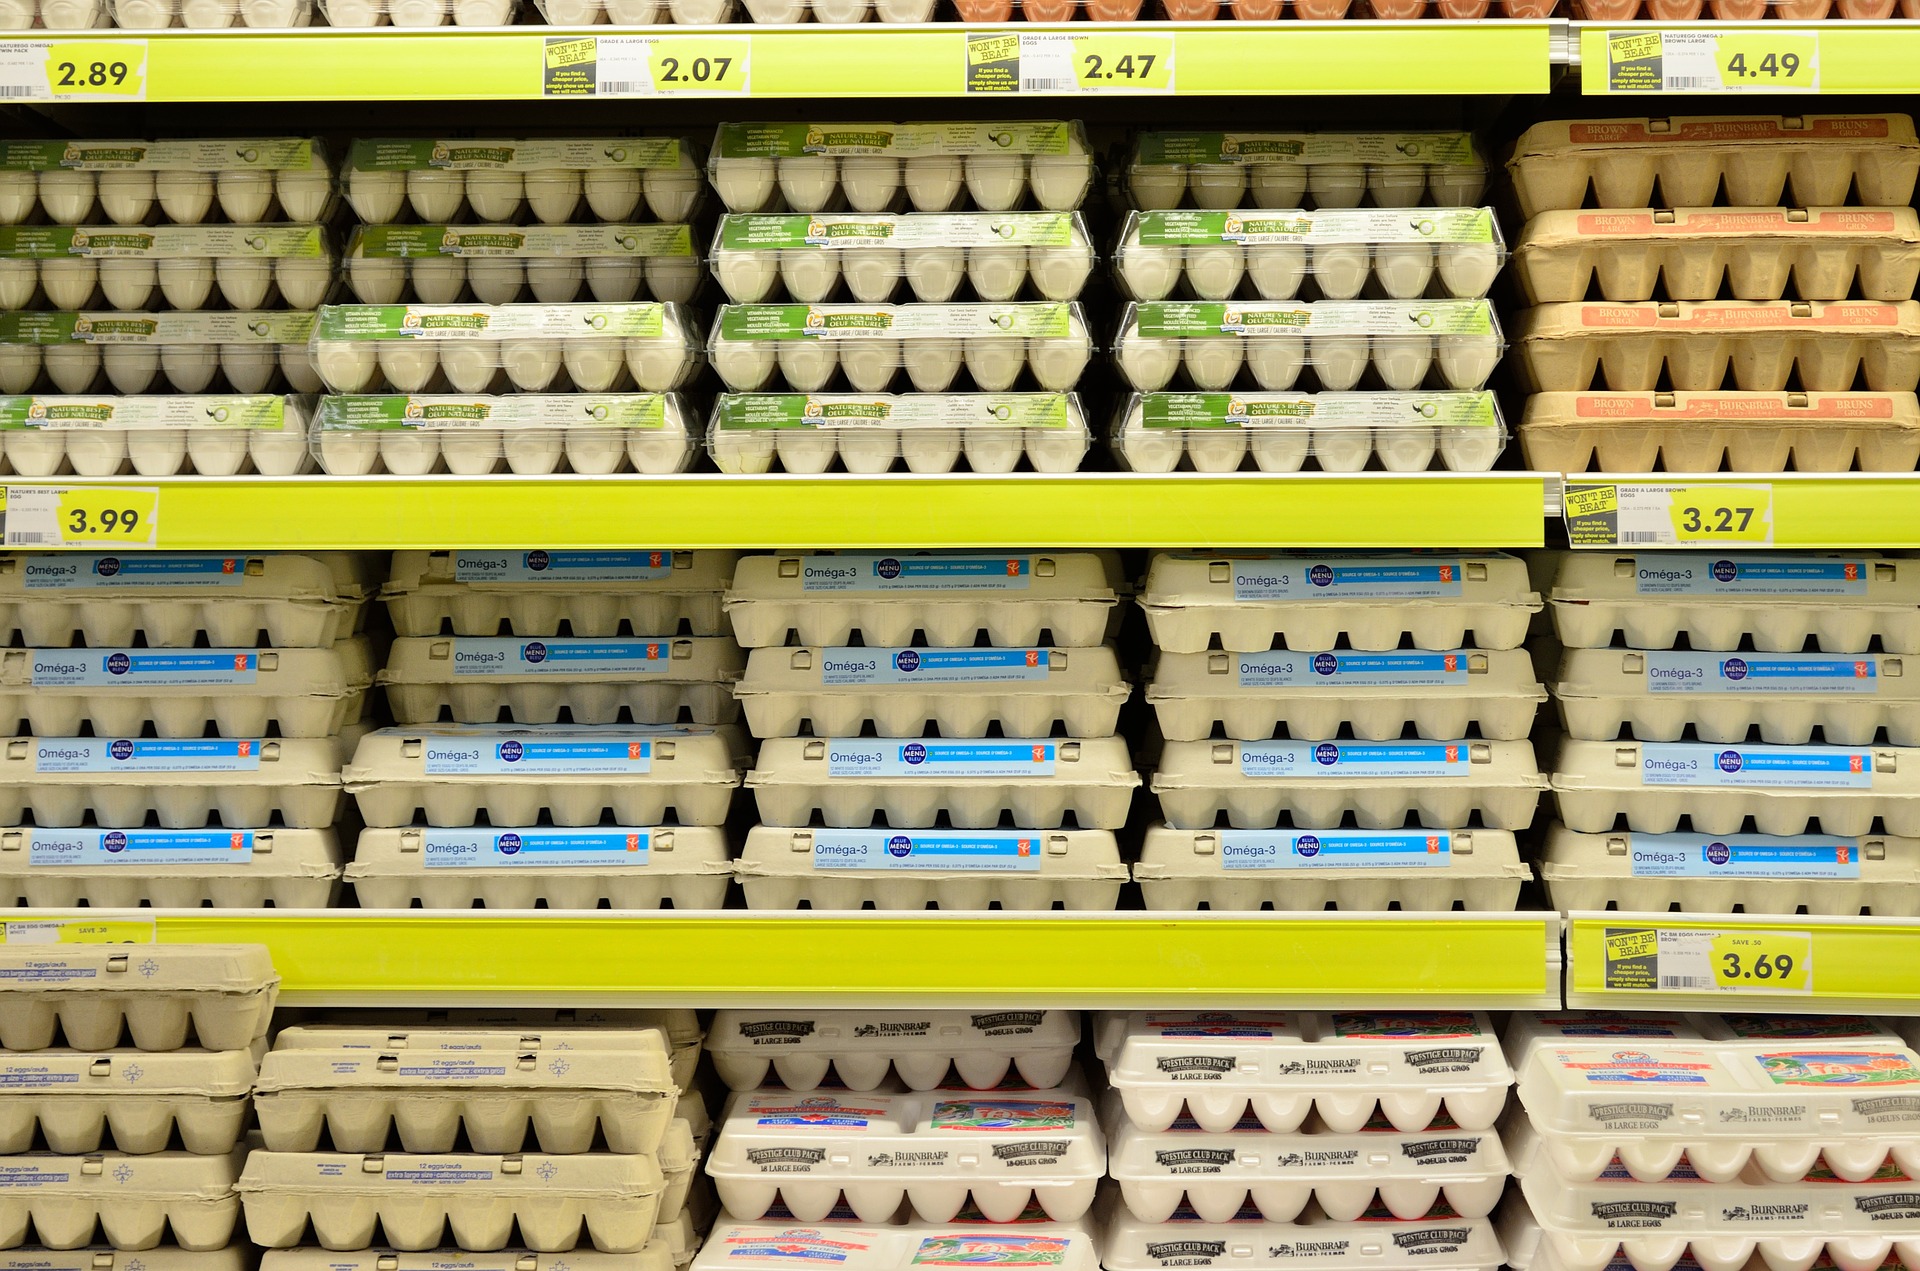 Grocery shelves full of eggs